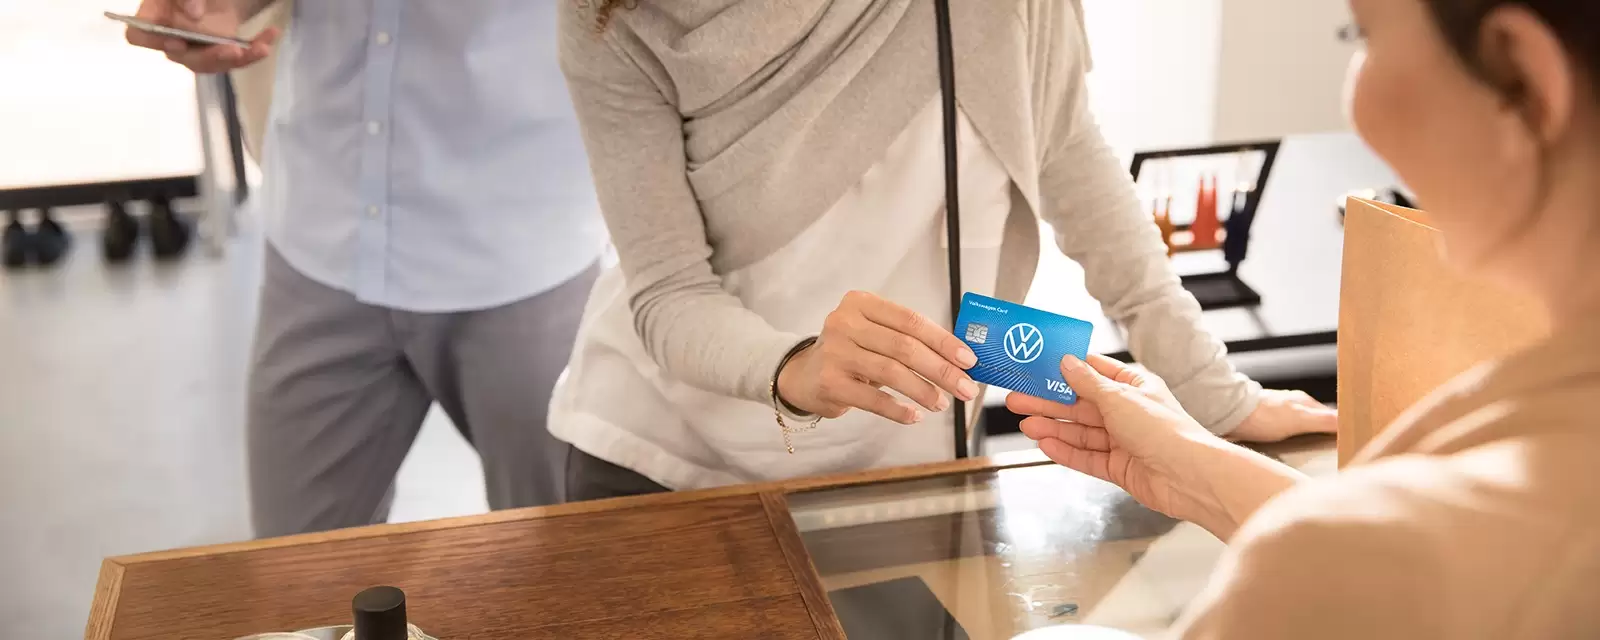 Frau bezahlt mit Visa Card